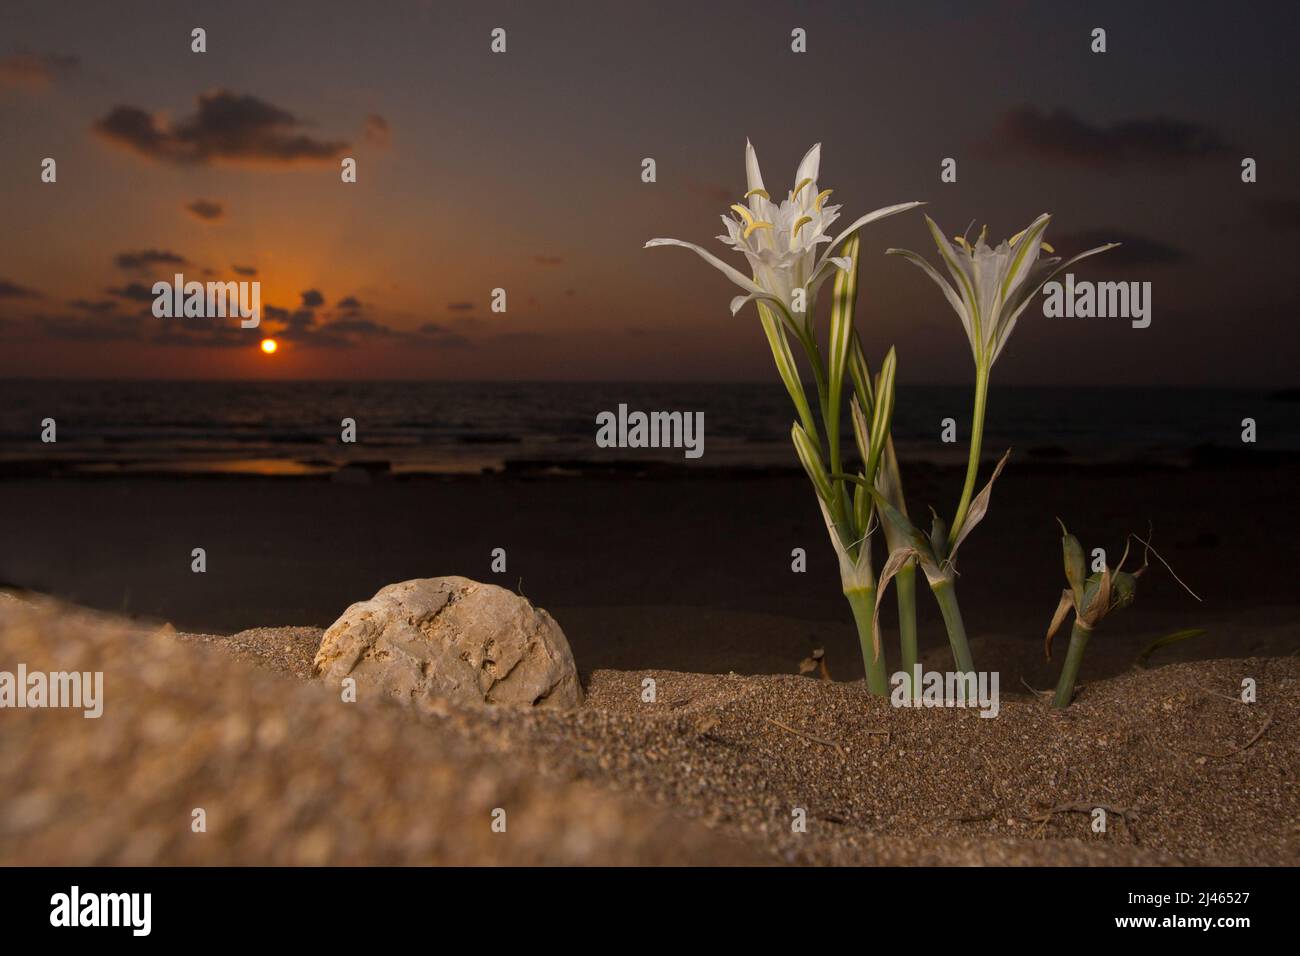 Un bambino piccolo sta odorando un daffodil marino, pancratium giglio mare (pancratium maritimum) sulla costa mediterranea, israele in ottobre di notte Foto Stock